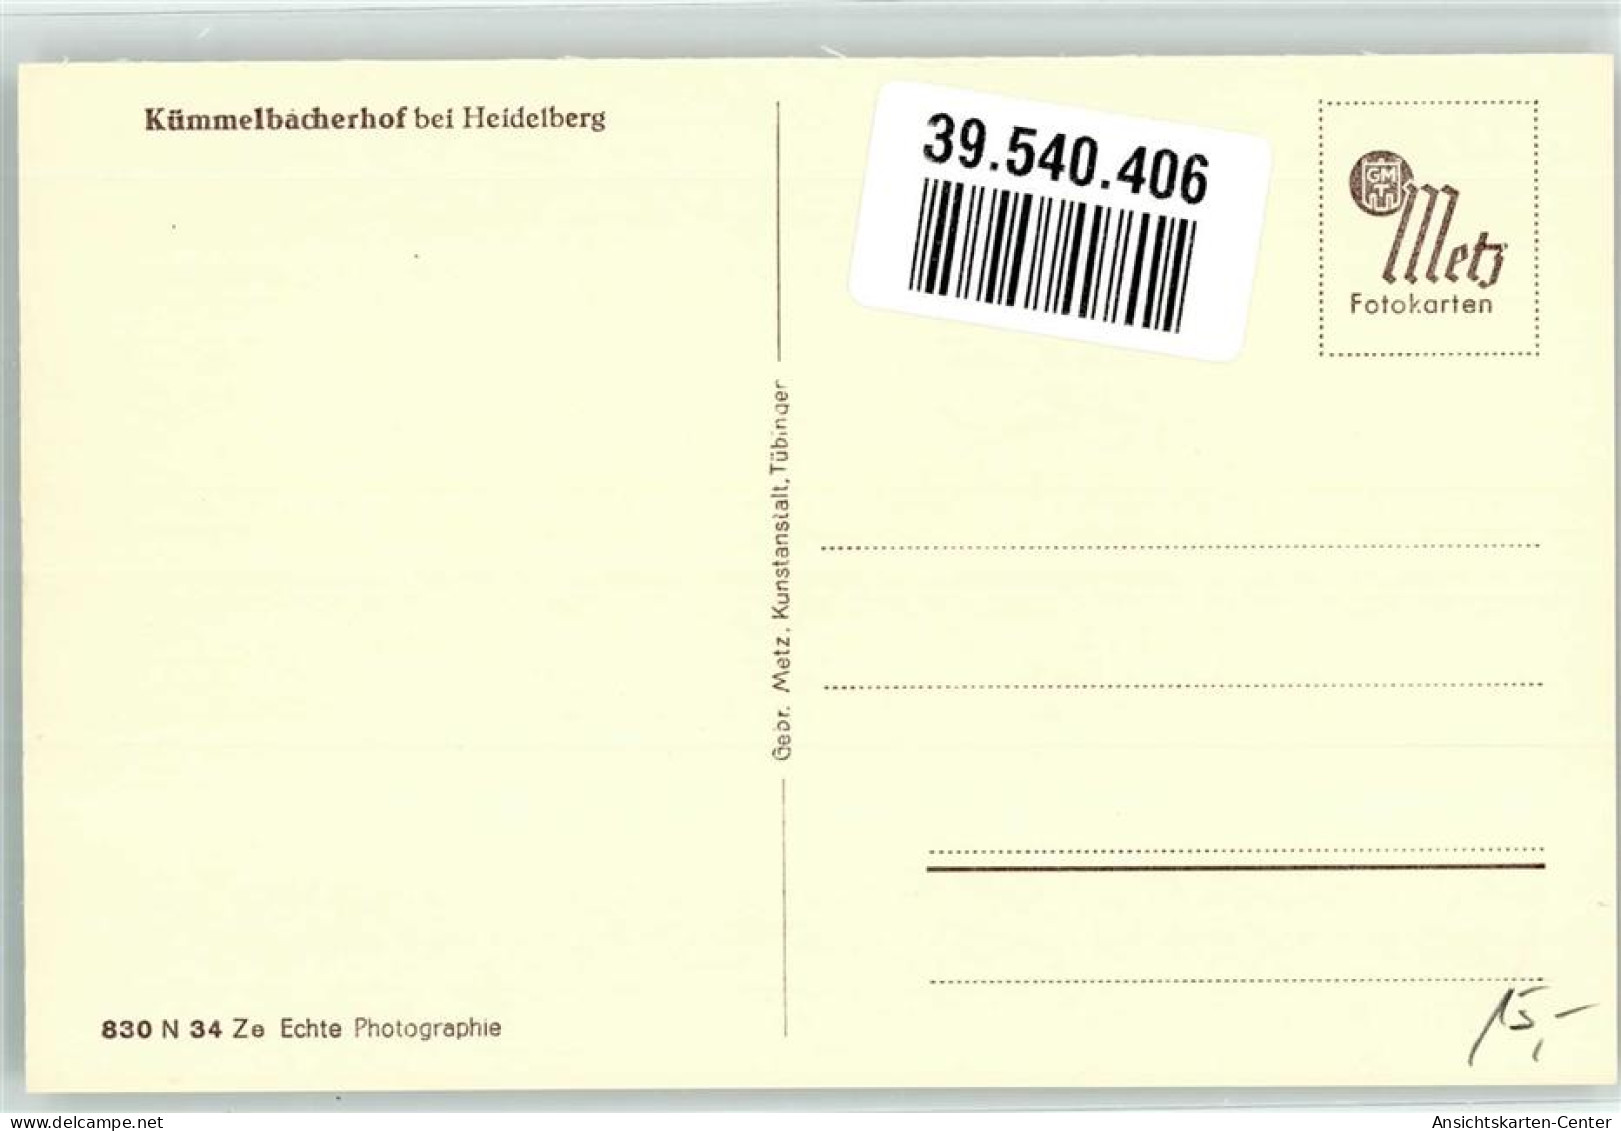 39540406 - Neckargemuend - Neckargemünd